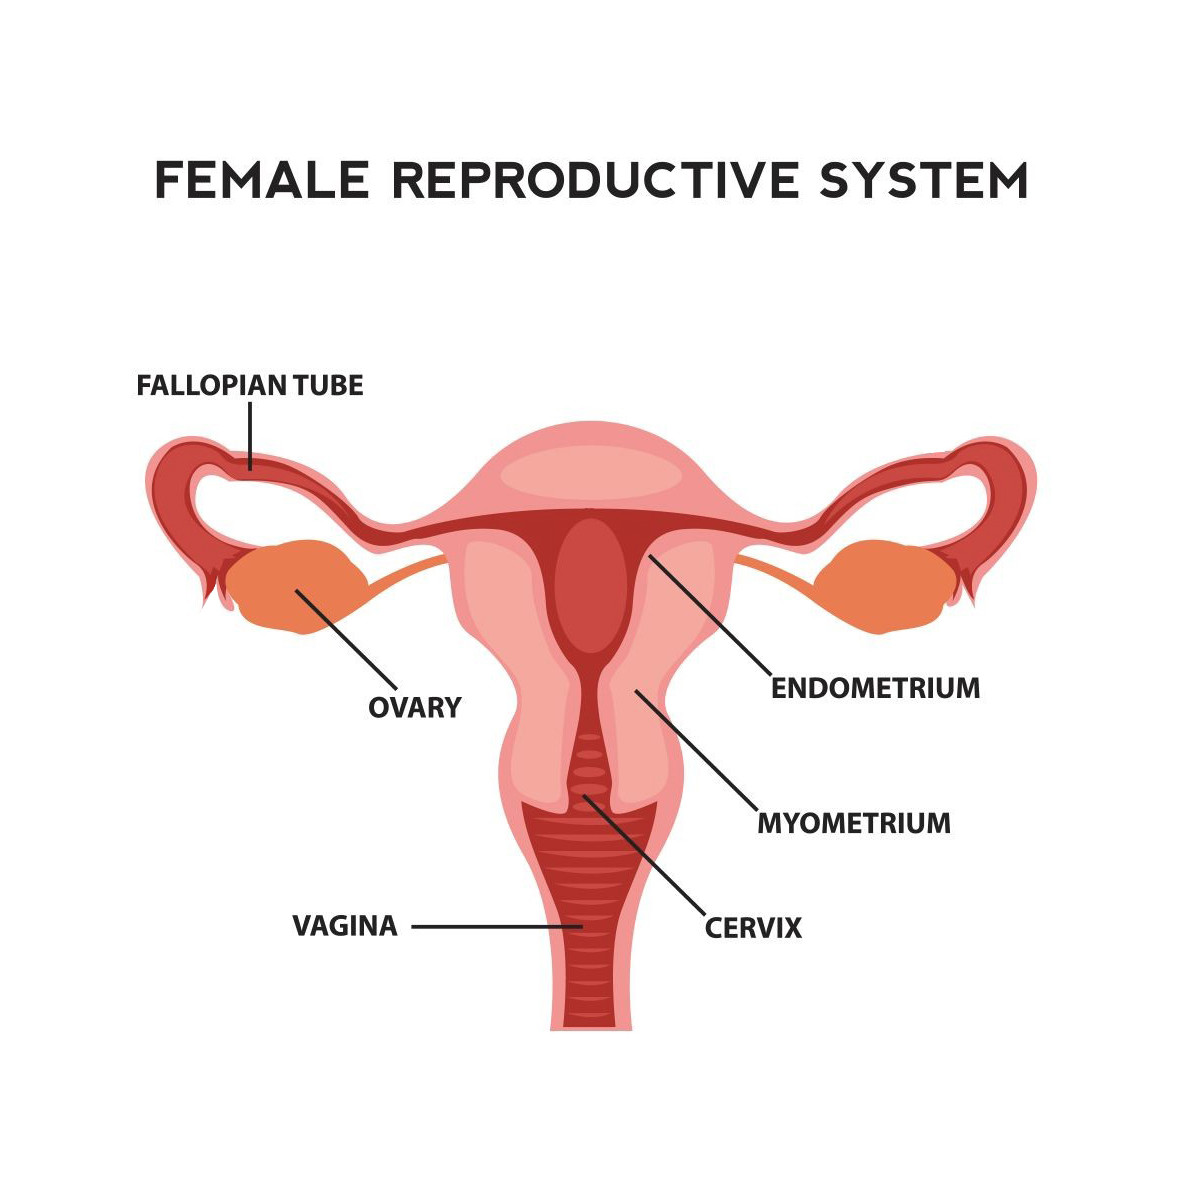 Fertility in women